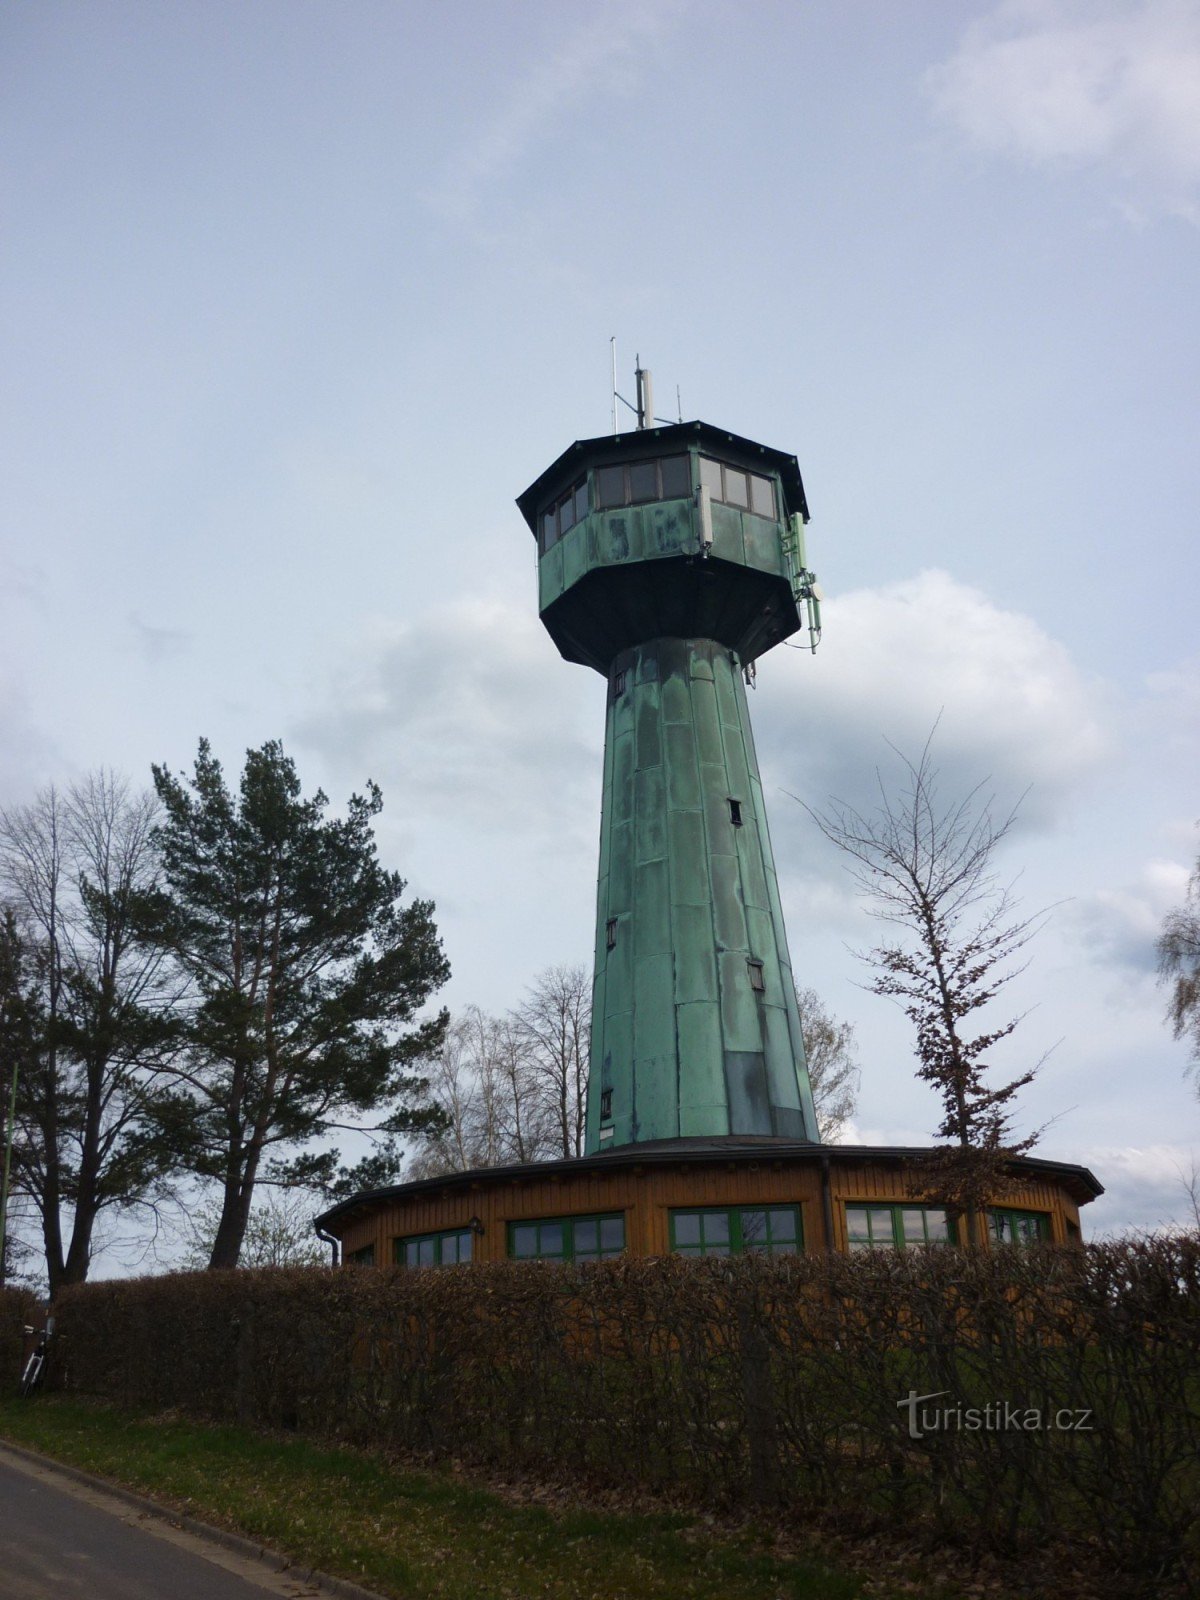 Aussichtsturm Grenzelandturm in Neualbenreuth